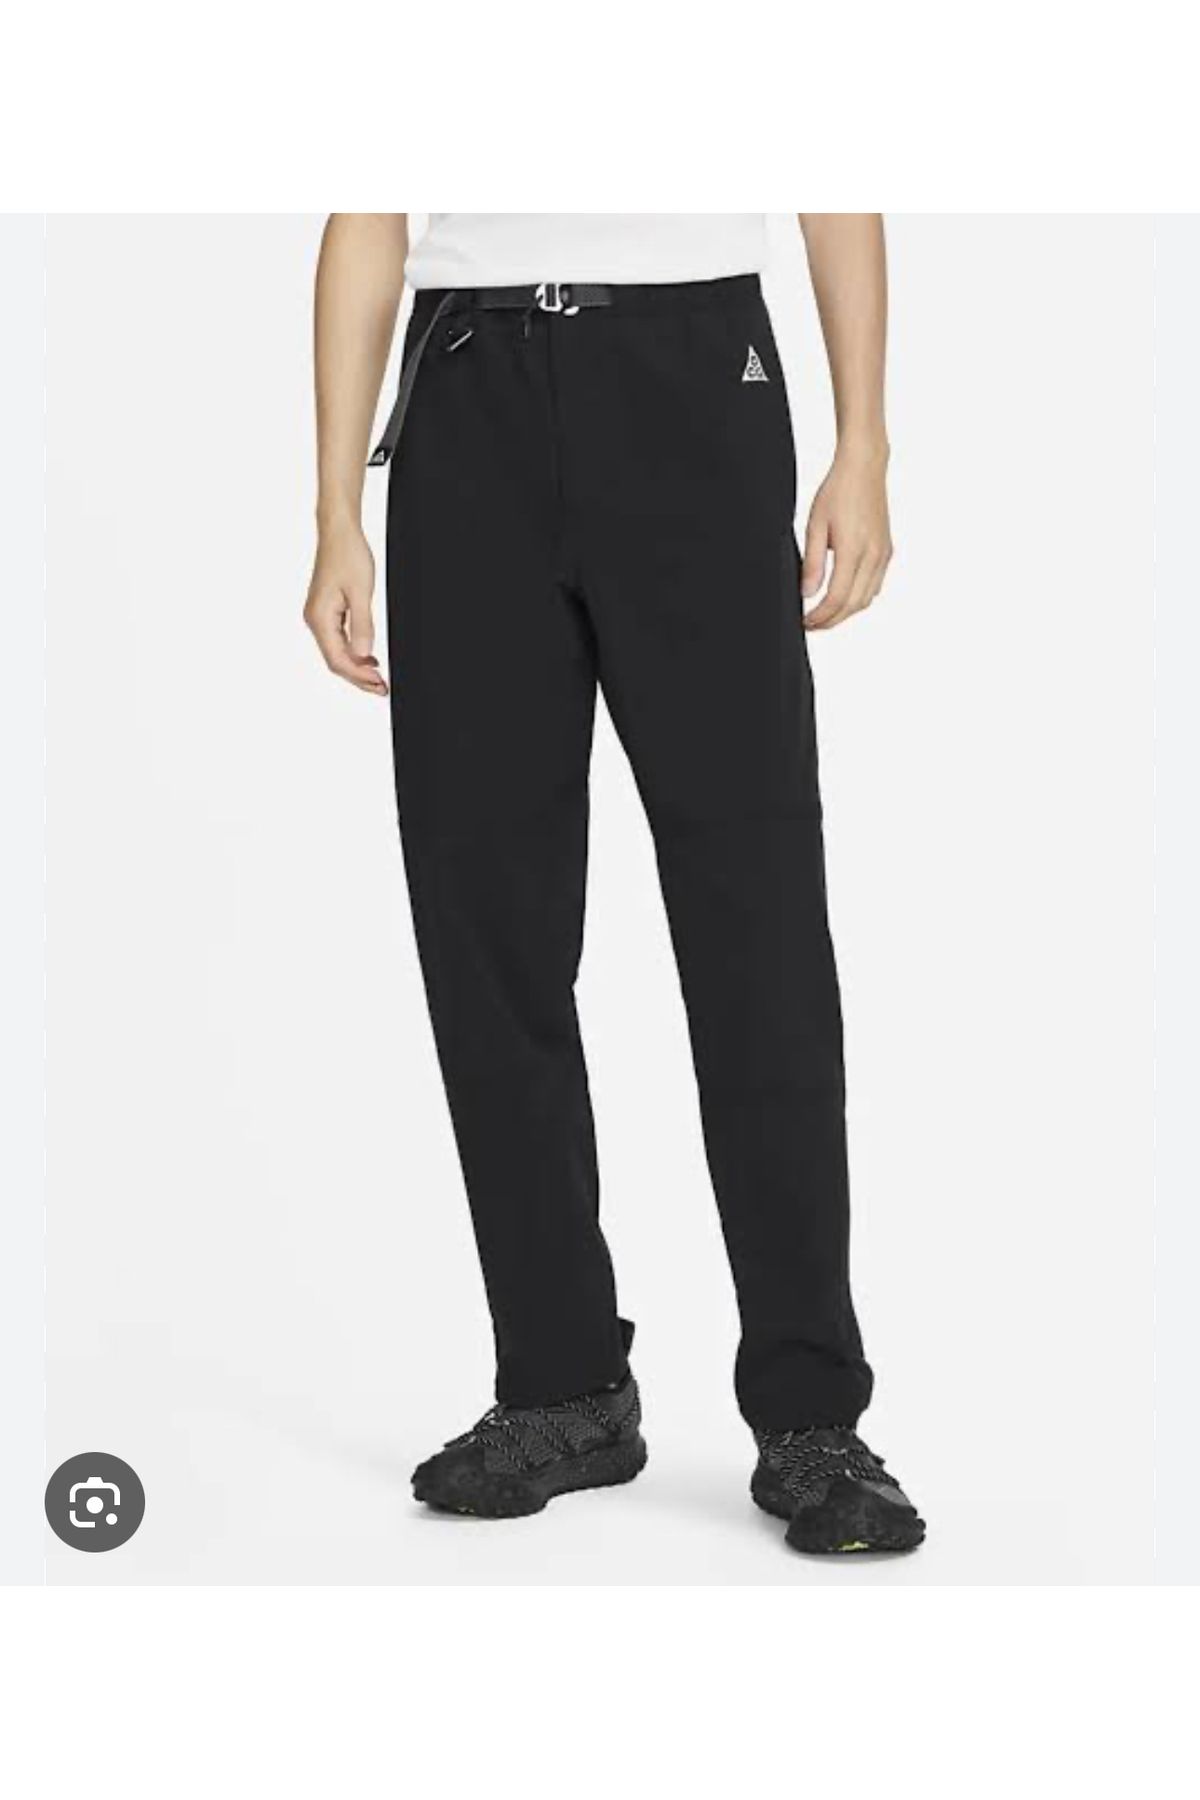 Nike ACG 'Güneş Yolcusu' Erkek Patika Pantolon